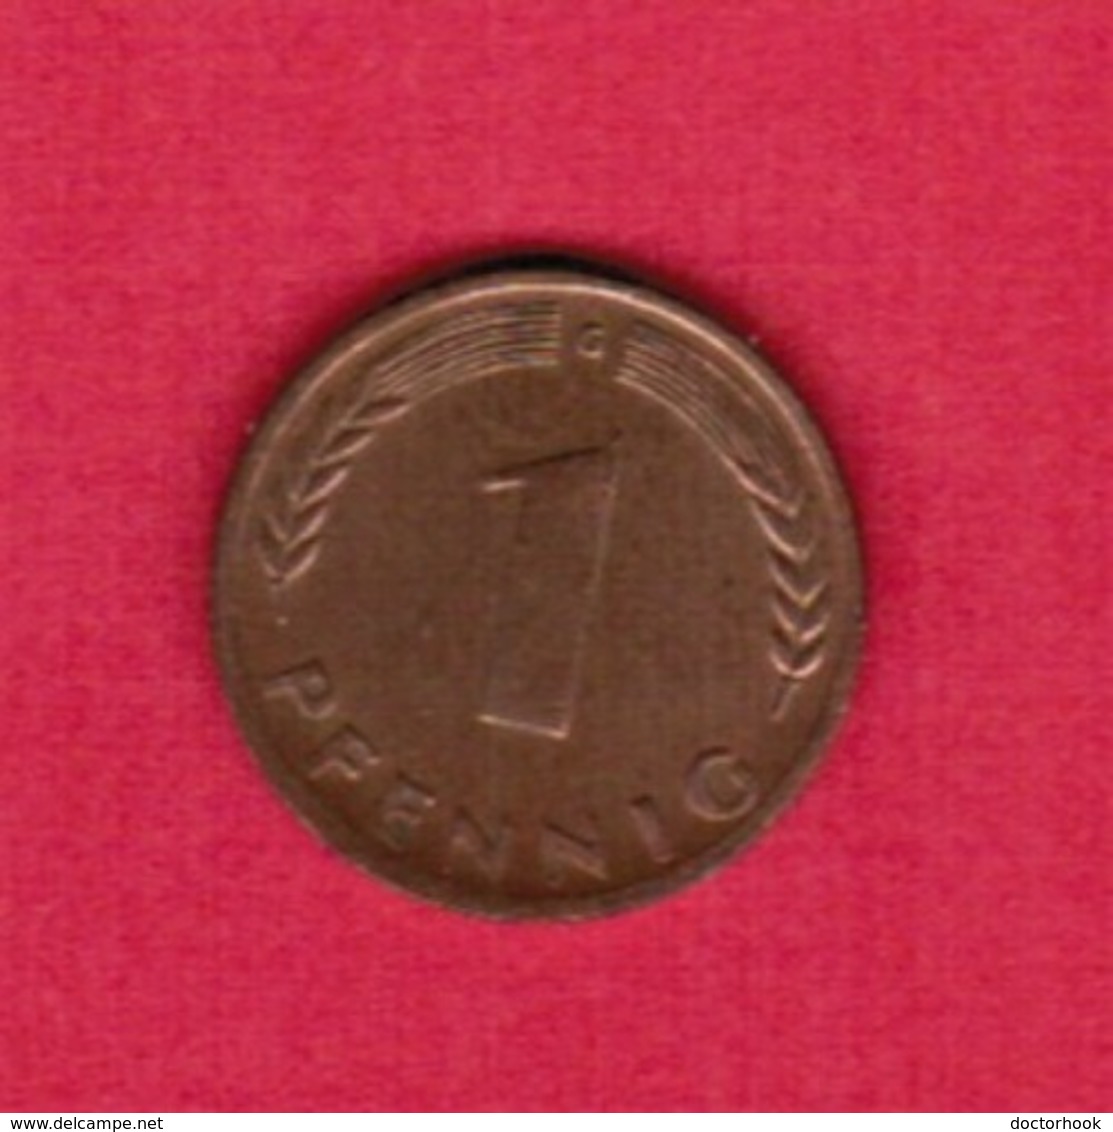 GERMANY  1 PFENNIG 1950 "G" (KM # 105) #5317 - 1 Pfennig